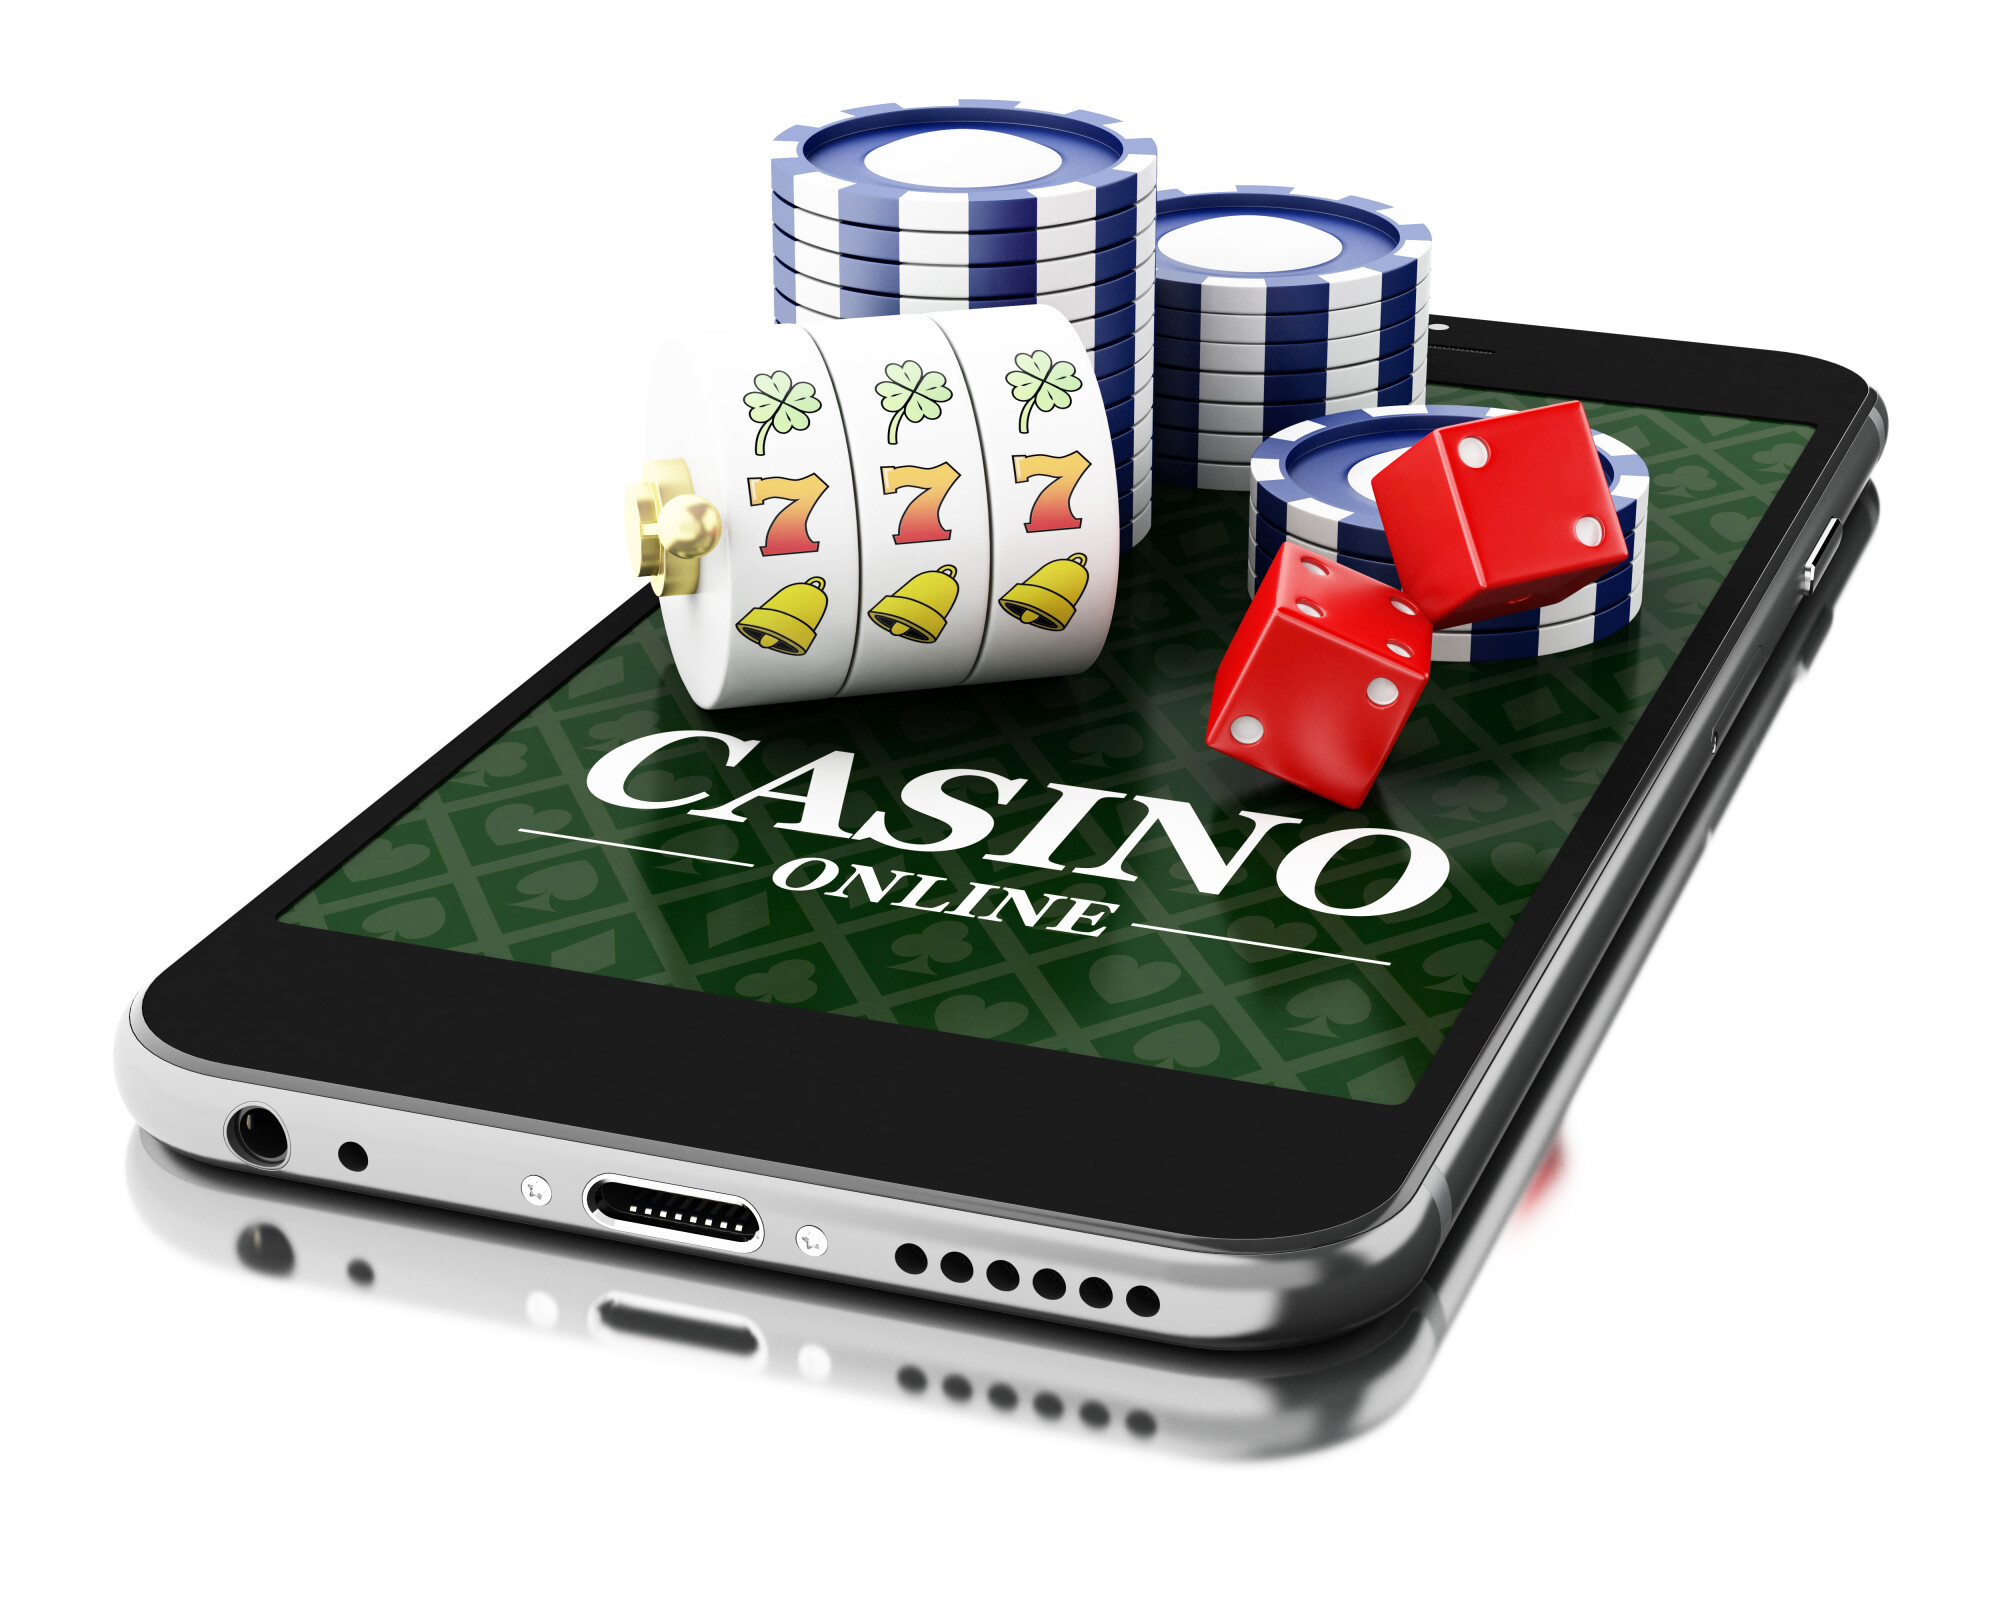 Mobile casino gaming. Мобильное казино. Казино на телефоне. Мобильные азартные игры. Казино для сотового телефона.